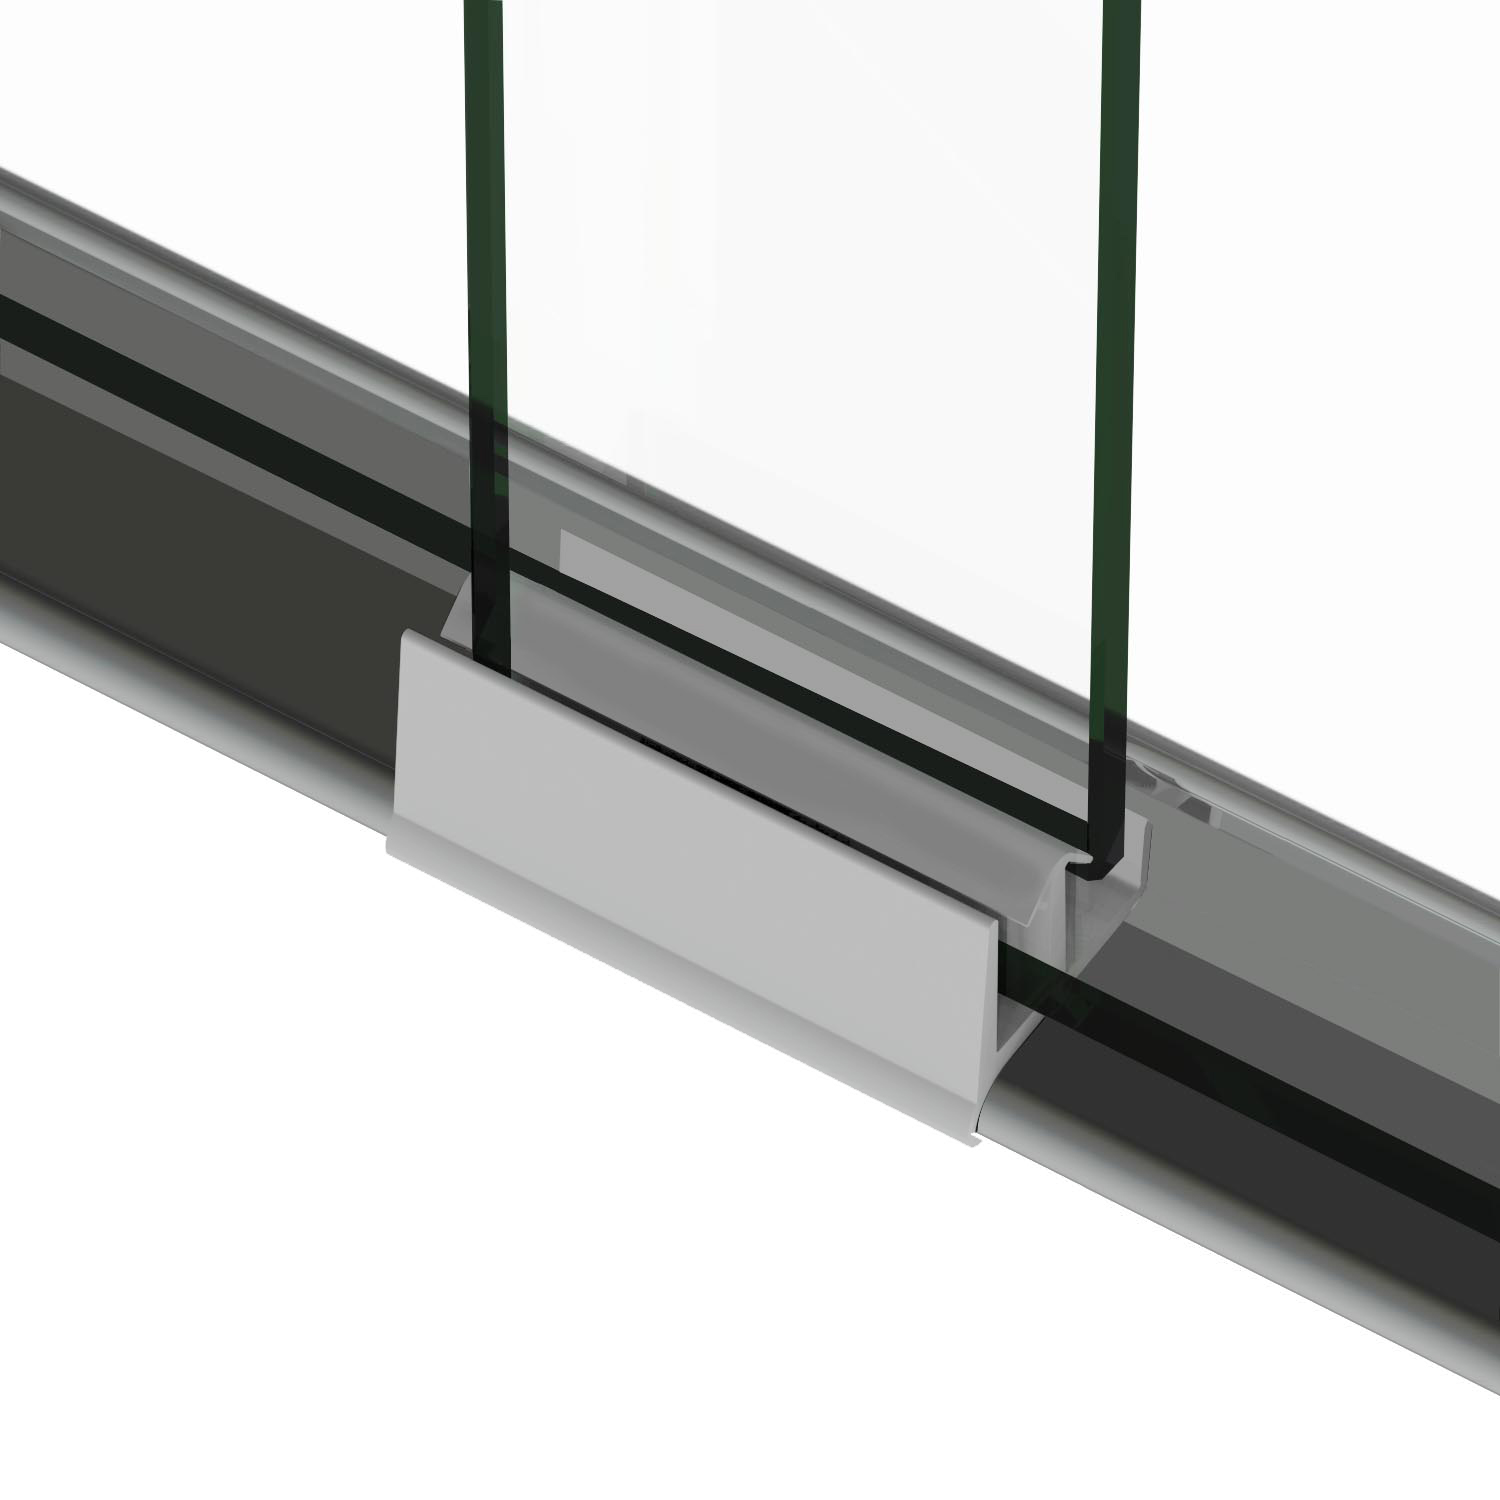 Download ELEGANT 54"x72" Semi-Frameless Bypass Sliding Shower Door Glass Chrome Finish | eBay